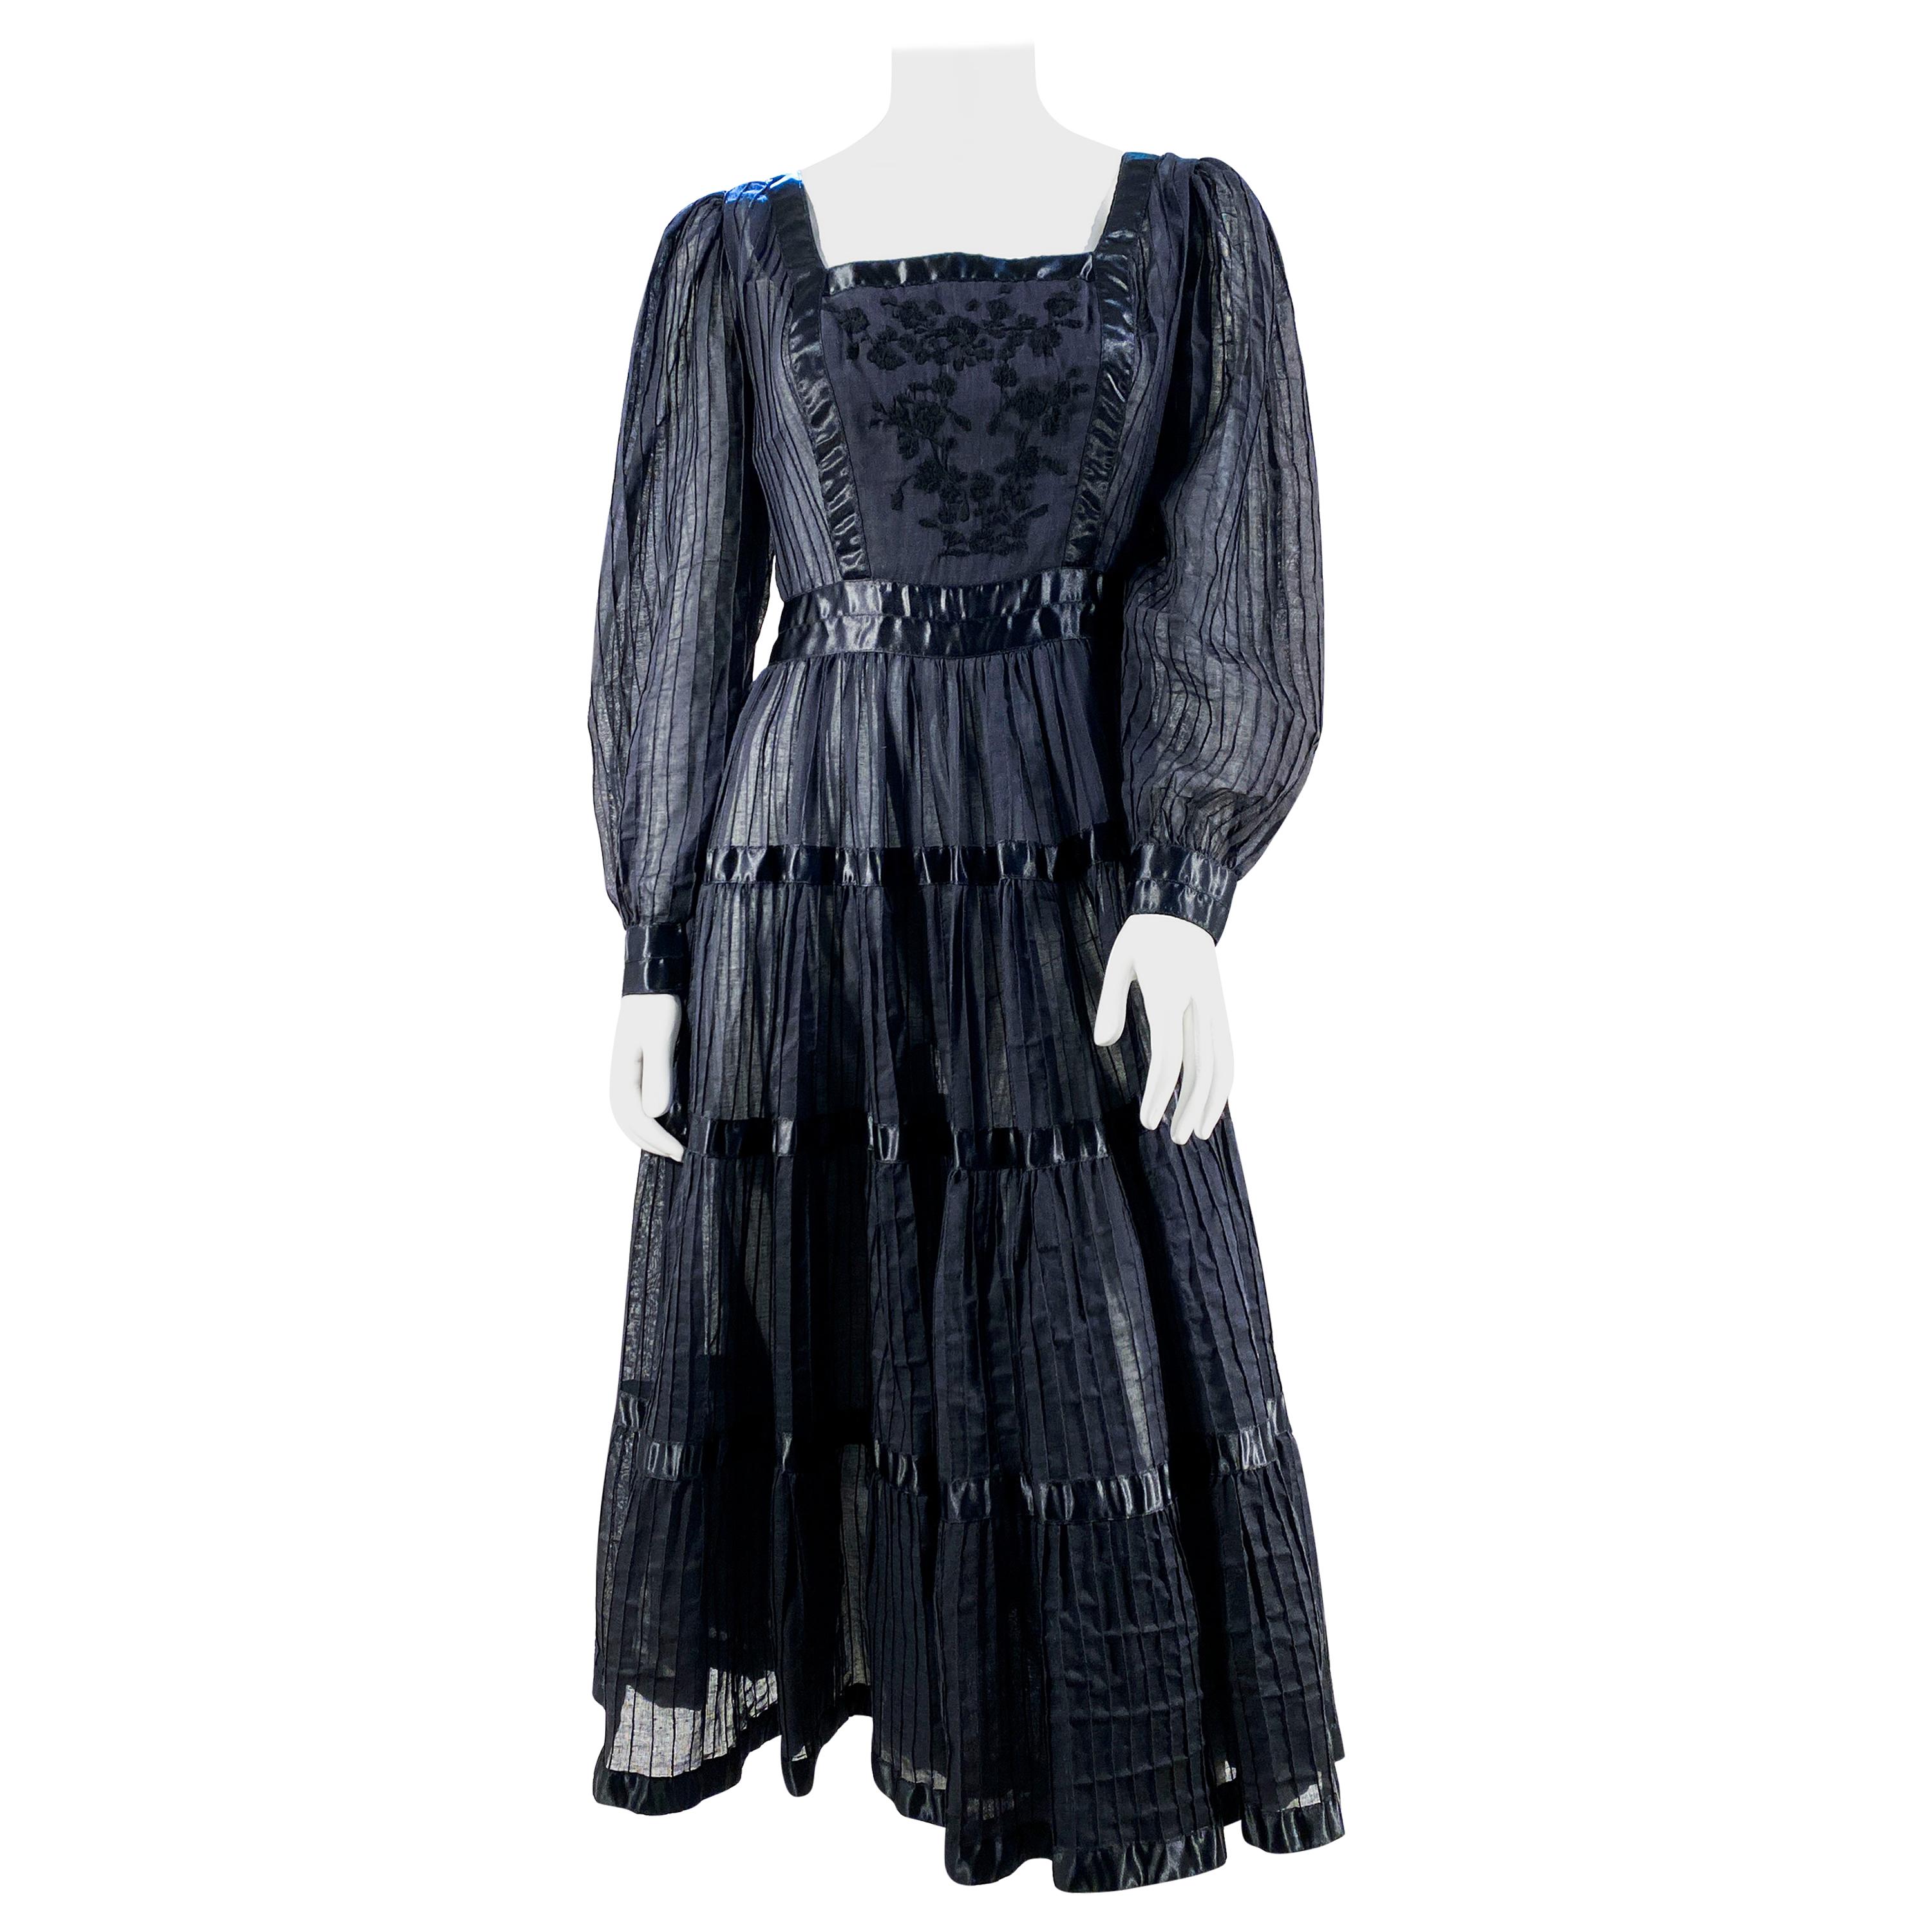 1960s Black Cotton Peasant/Bohemian Dress For Sale